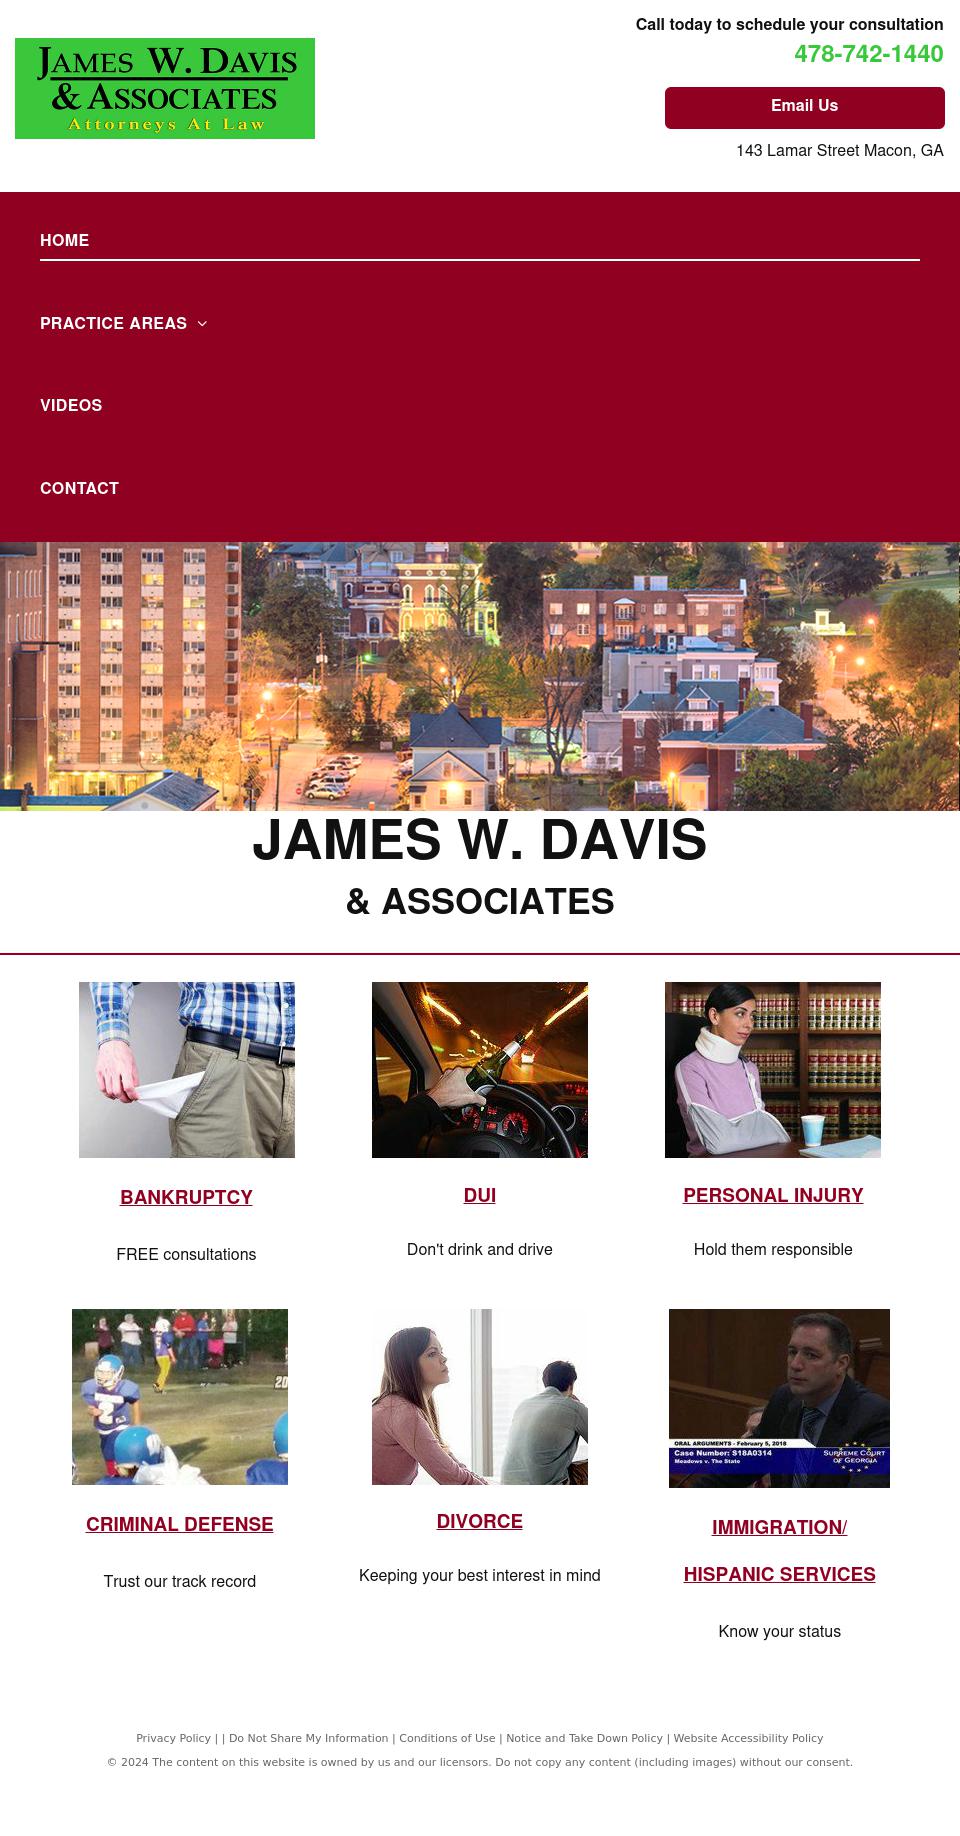 James W. Davis & Associates - Macon GA Lawyers